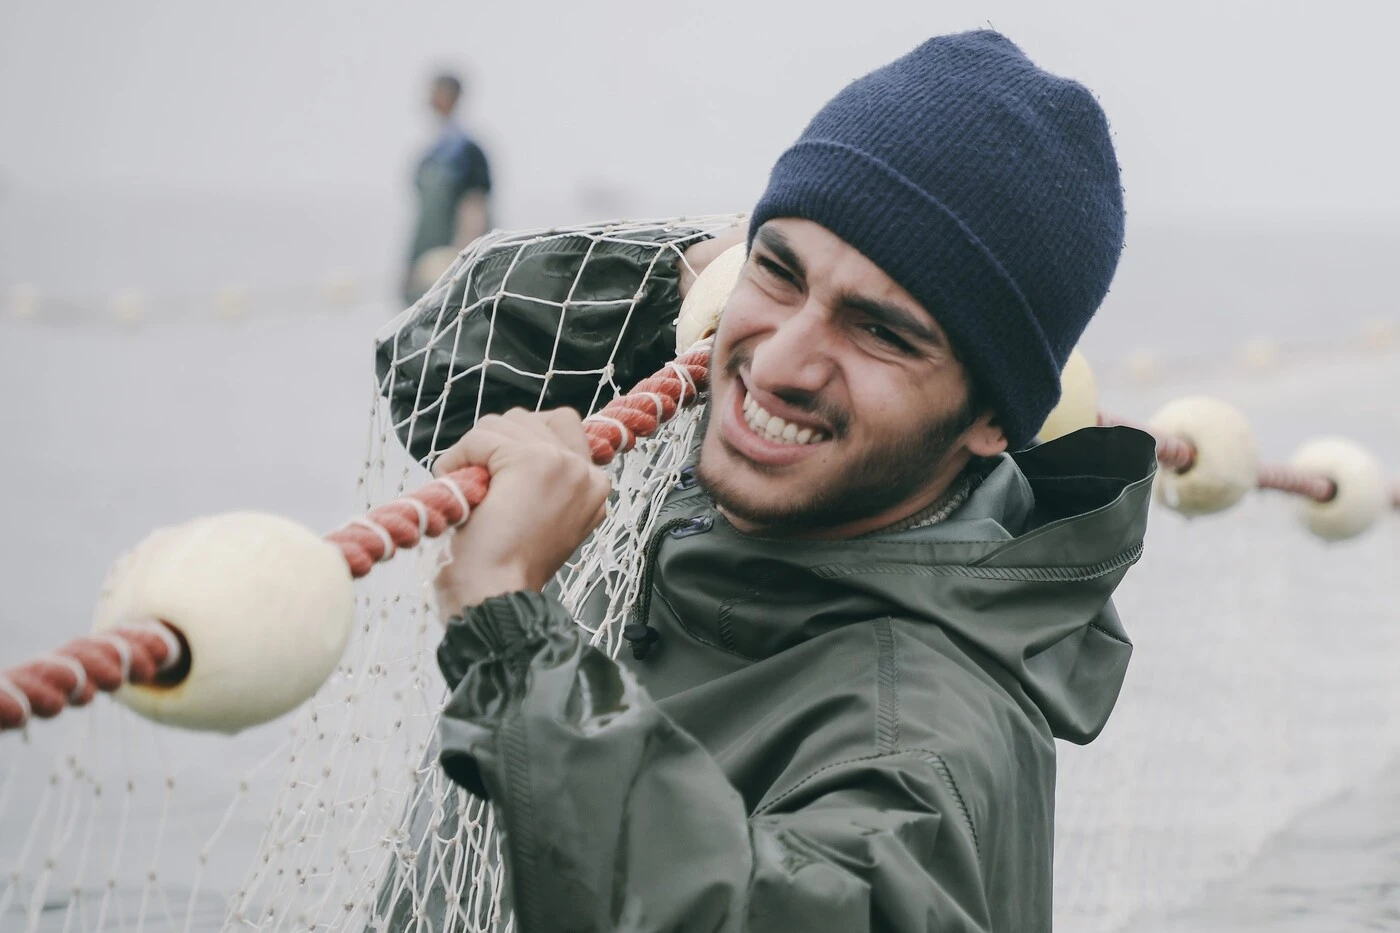 ein windiger Tag an der Küste, ein junger Mann in graugrünen Anorak und schwarzer Mütze zieht ein großes Netz aus dem Wasser